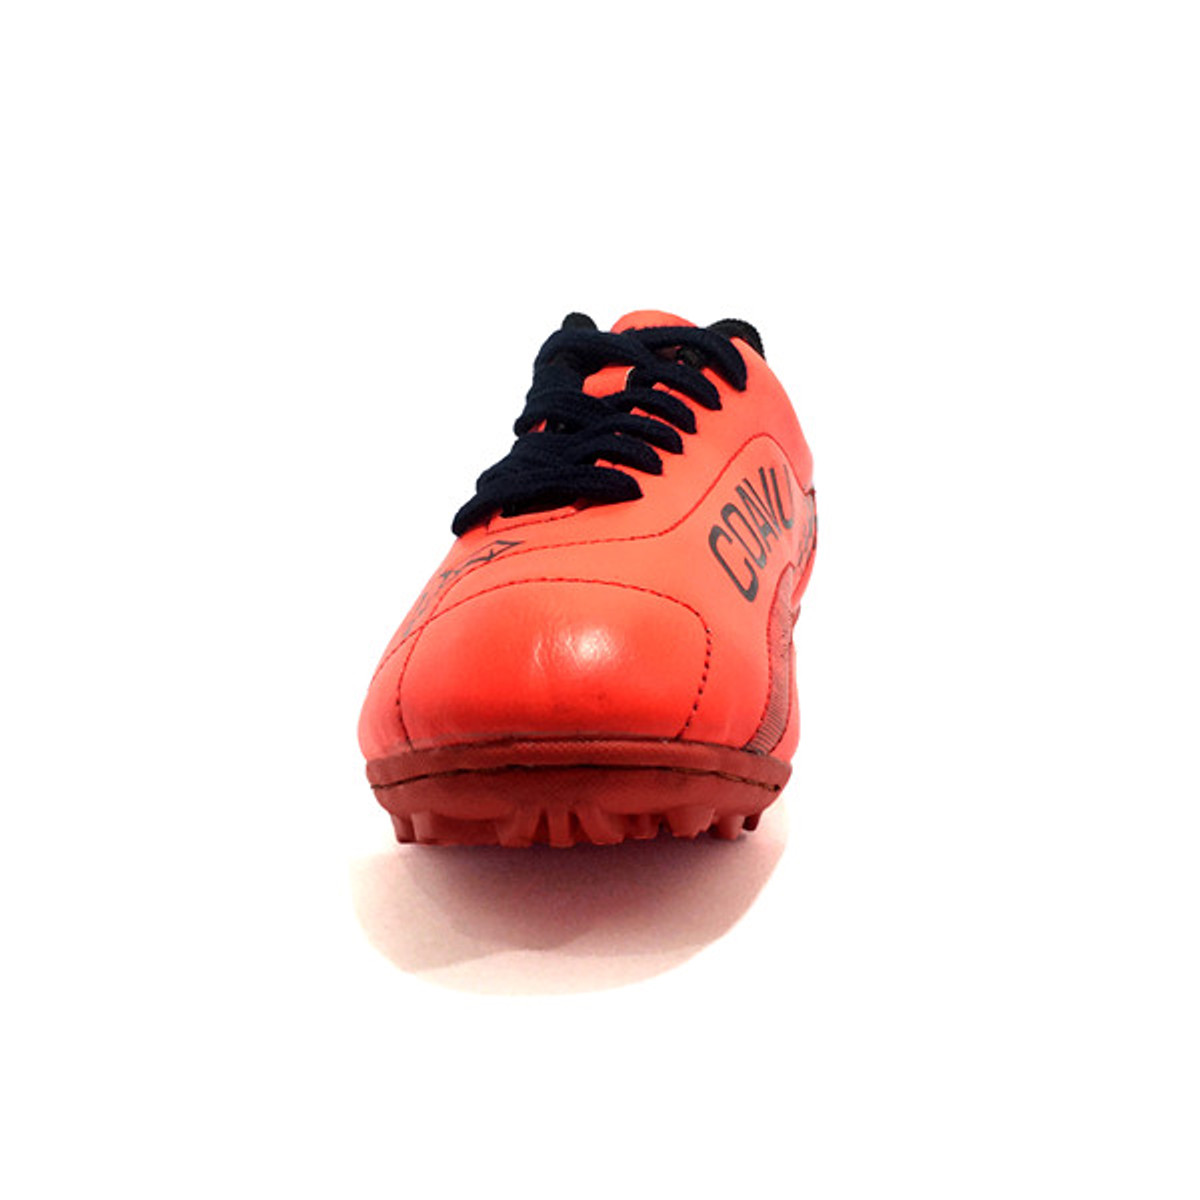 Giày đá bóng trẻ em sân cỏ nhân tạo CoaVu Dragon (màu cam)